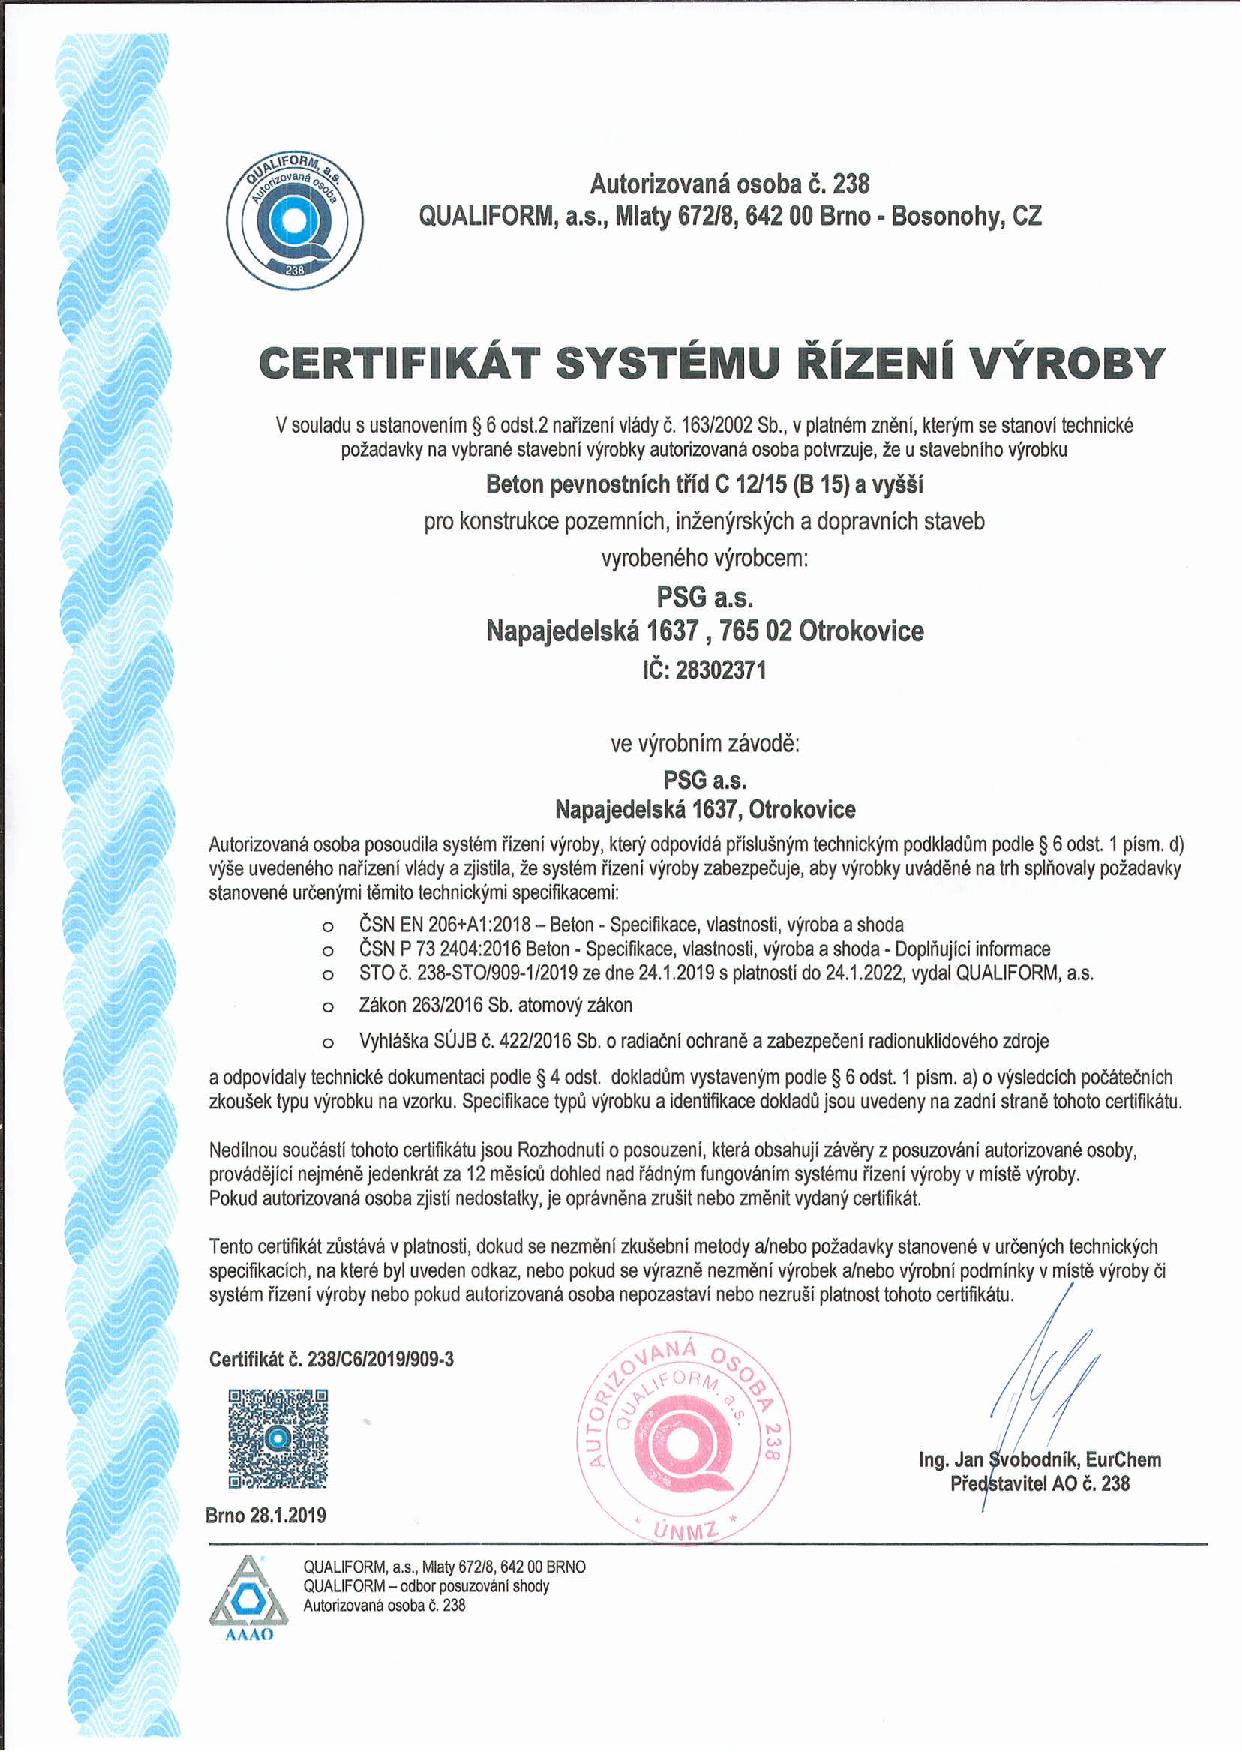 Certifikát systému řízení výroby Qualiform 2019